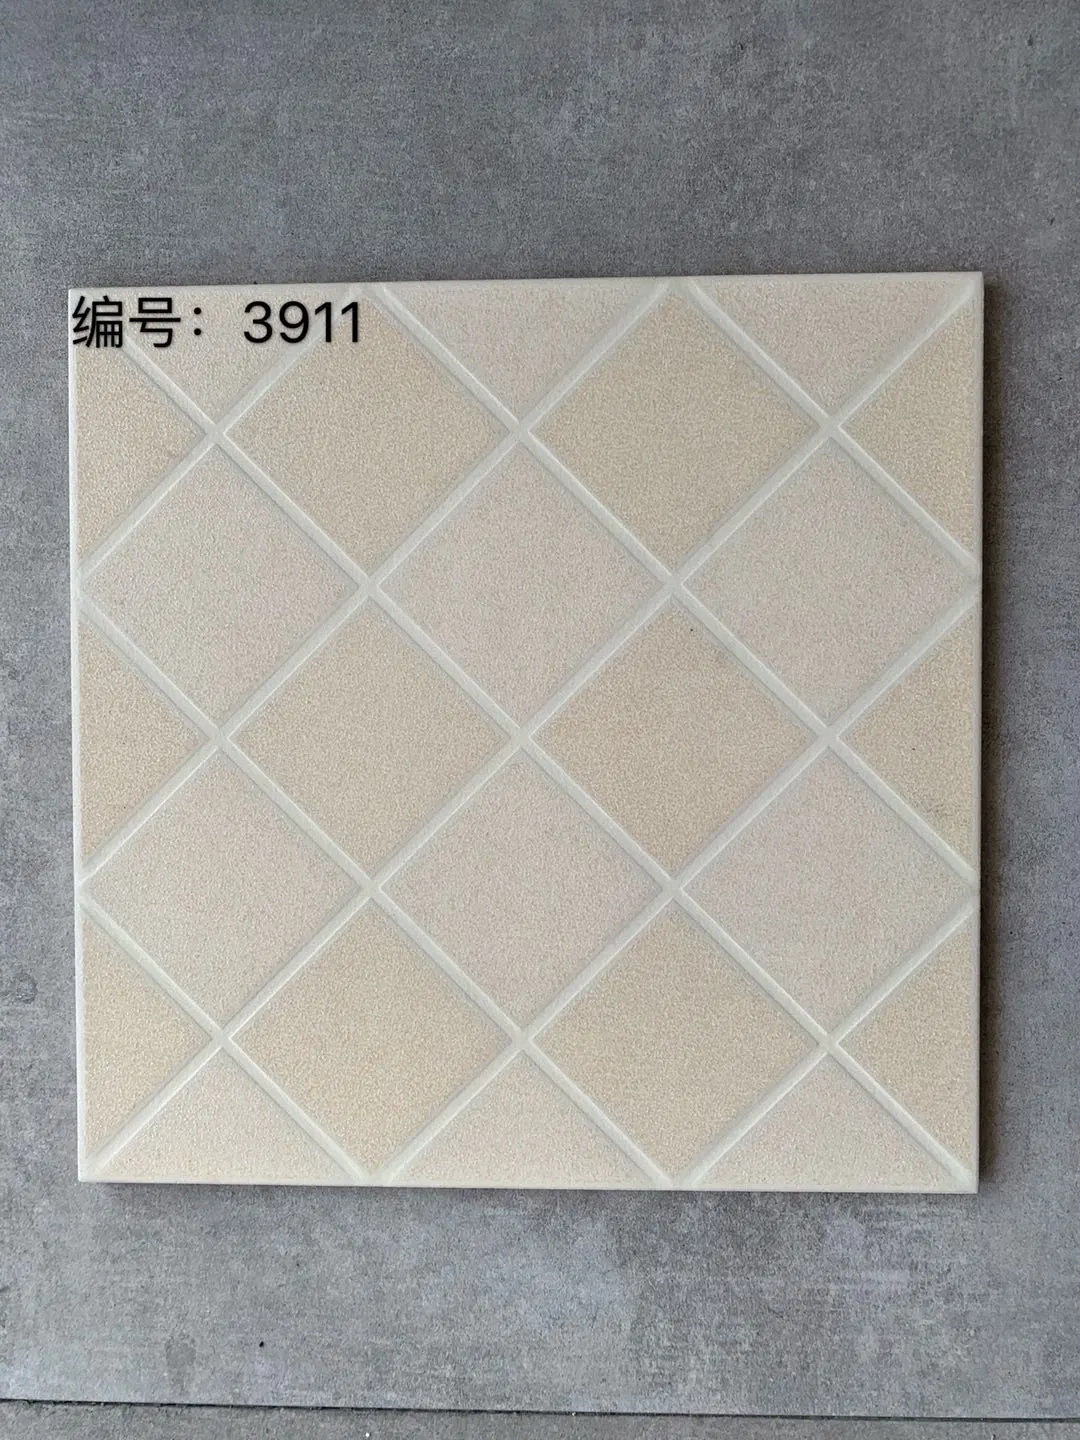 2022 Neues Produkt High-End-Fertig Antik Porzellan Keramik Wandboden Küche Badezimmer Matt Fliesen